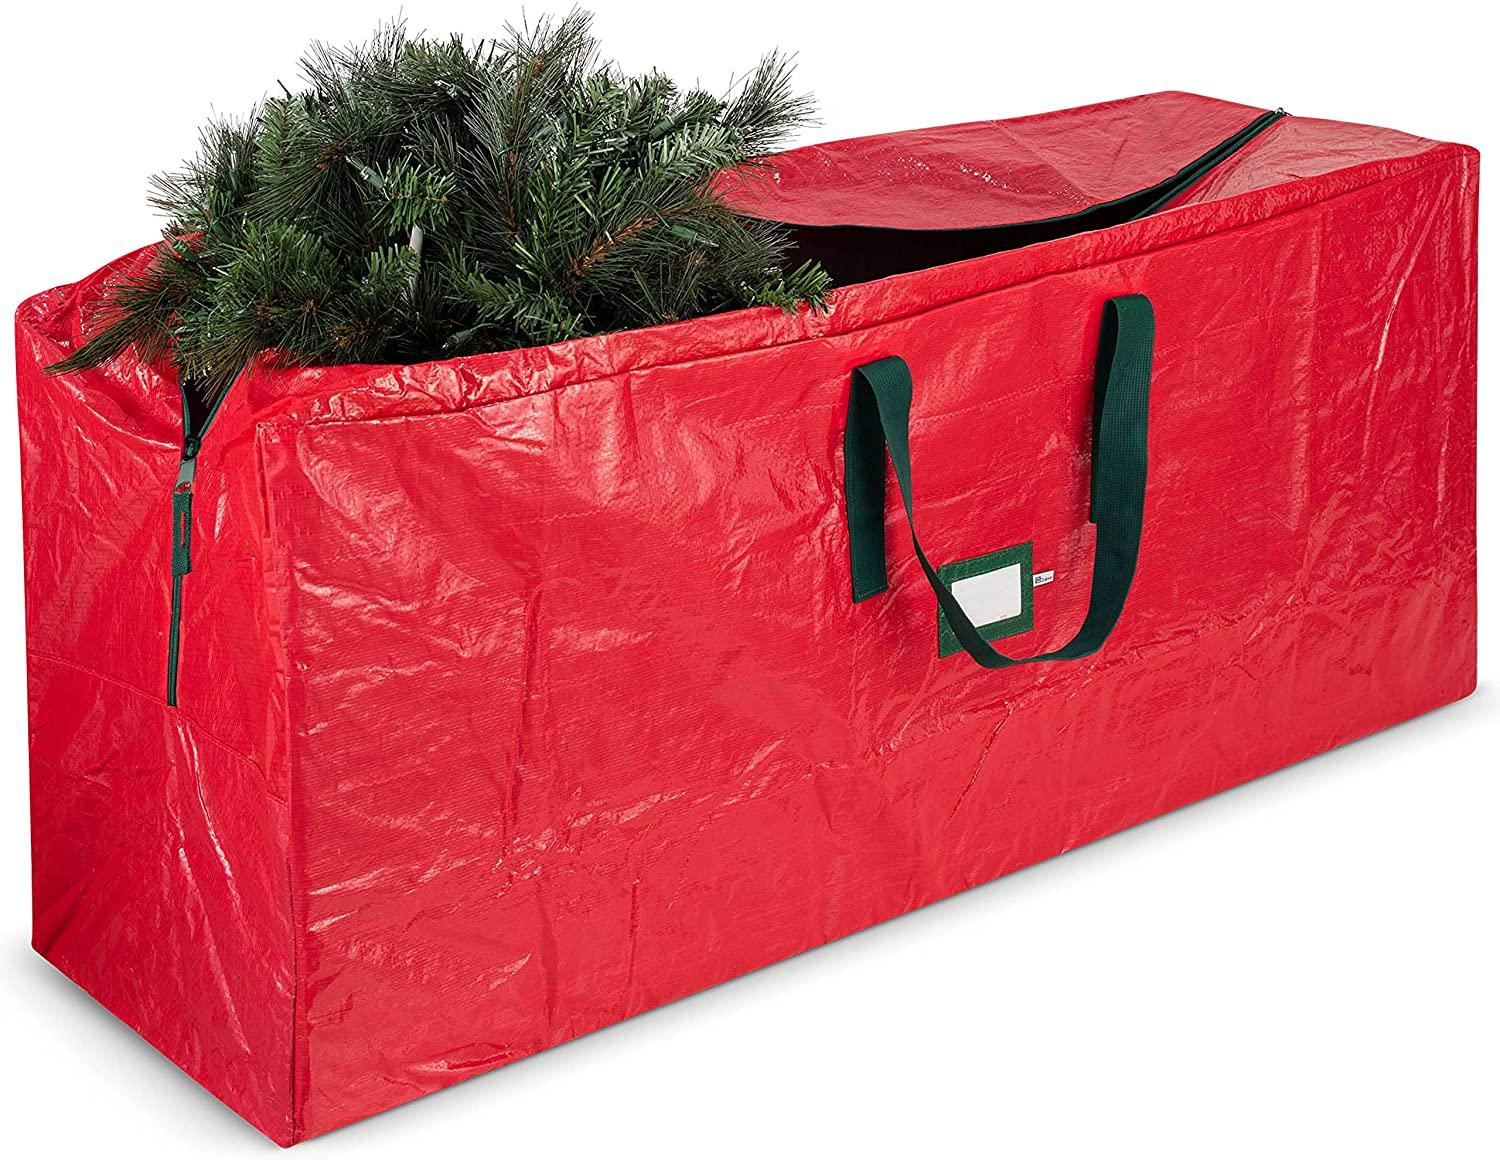 Zober Artificial Christmas Tree Storage Bag for $6.49